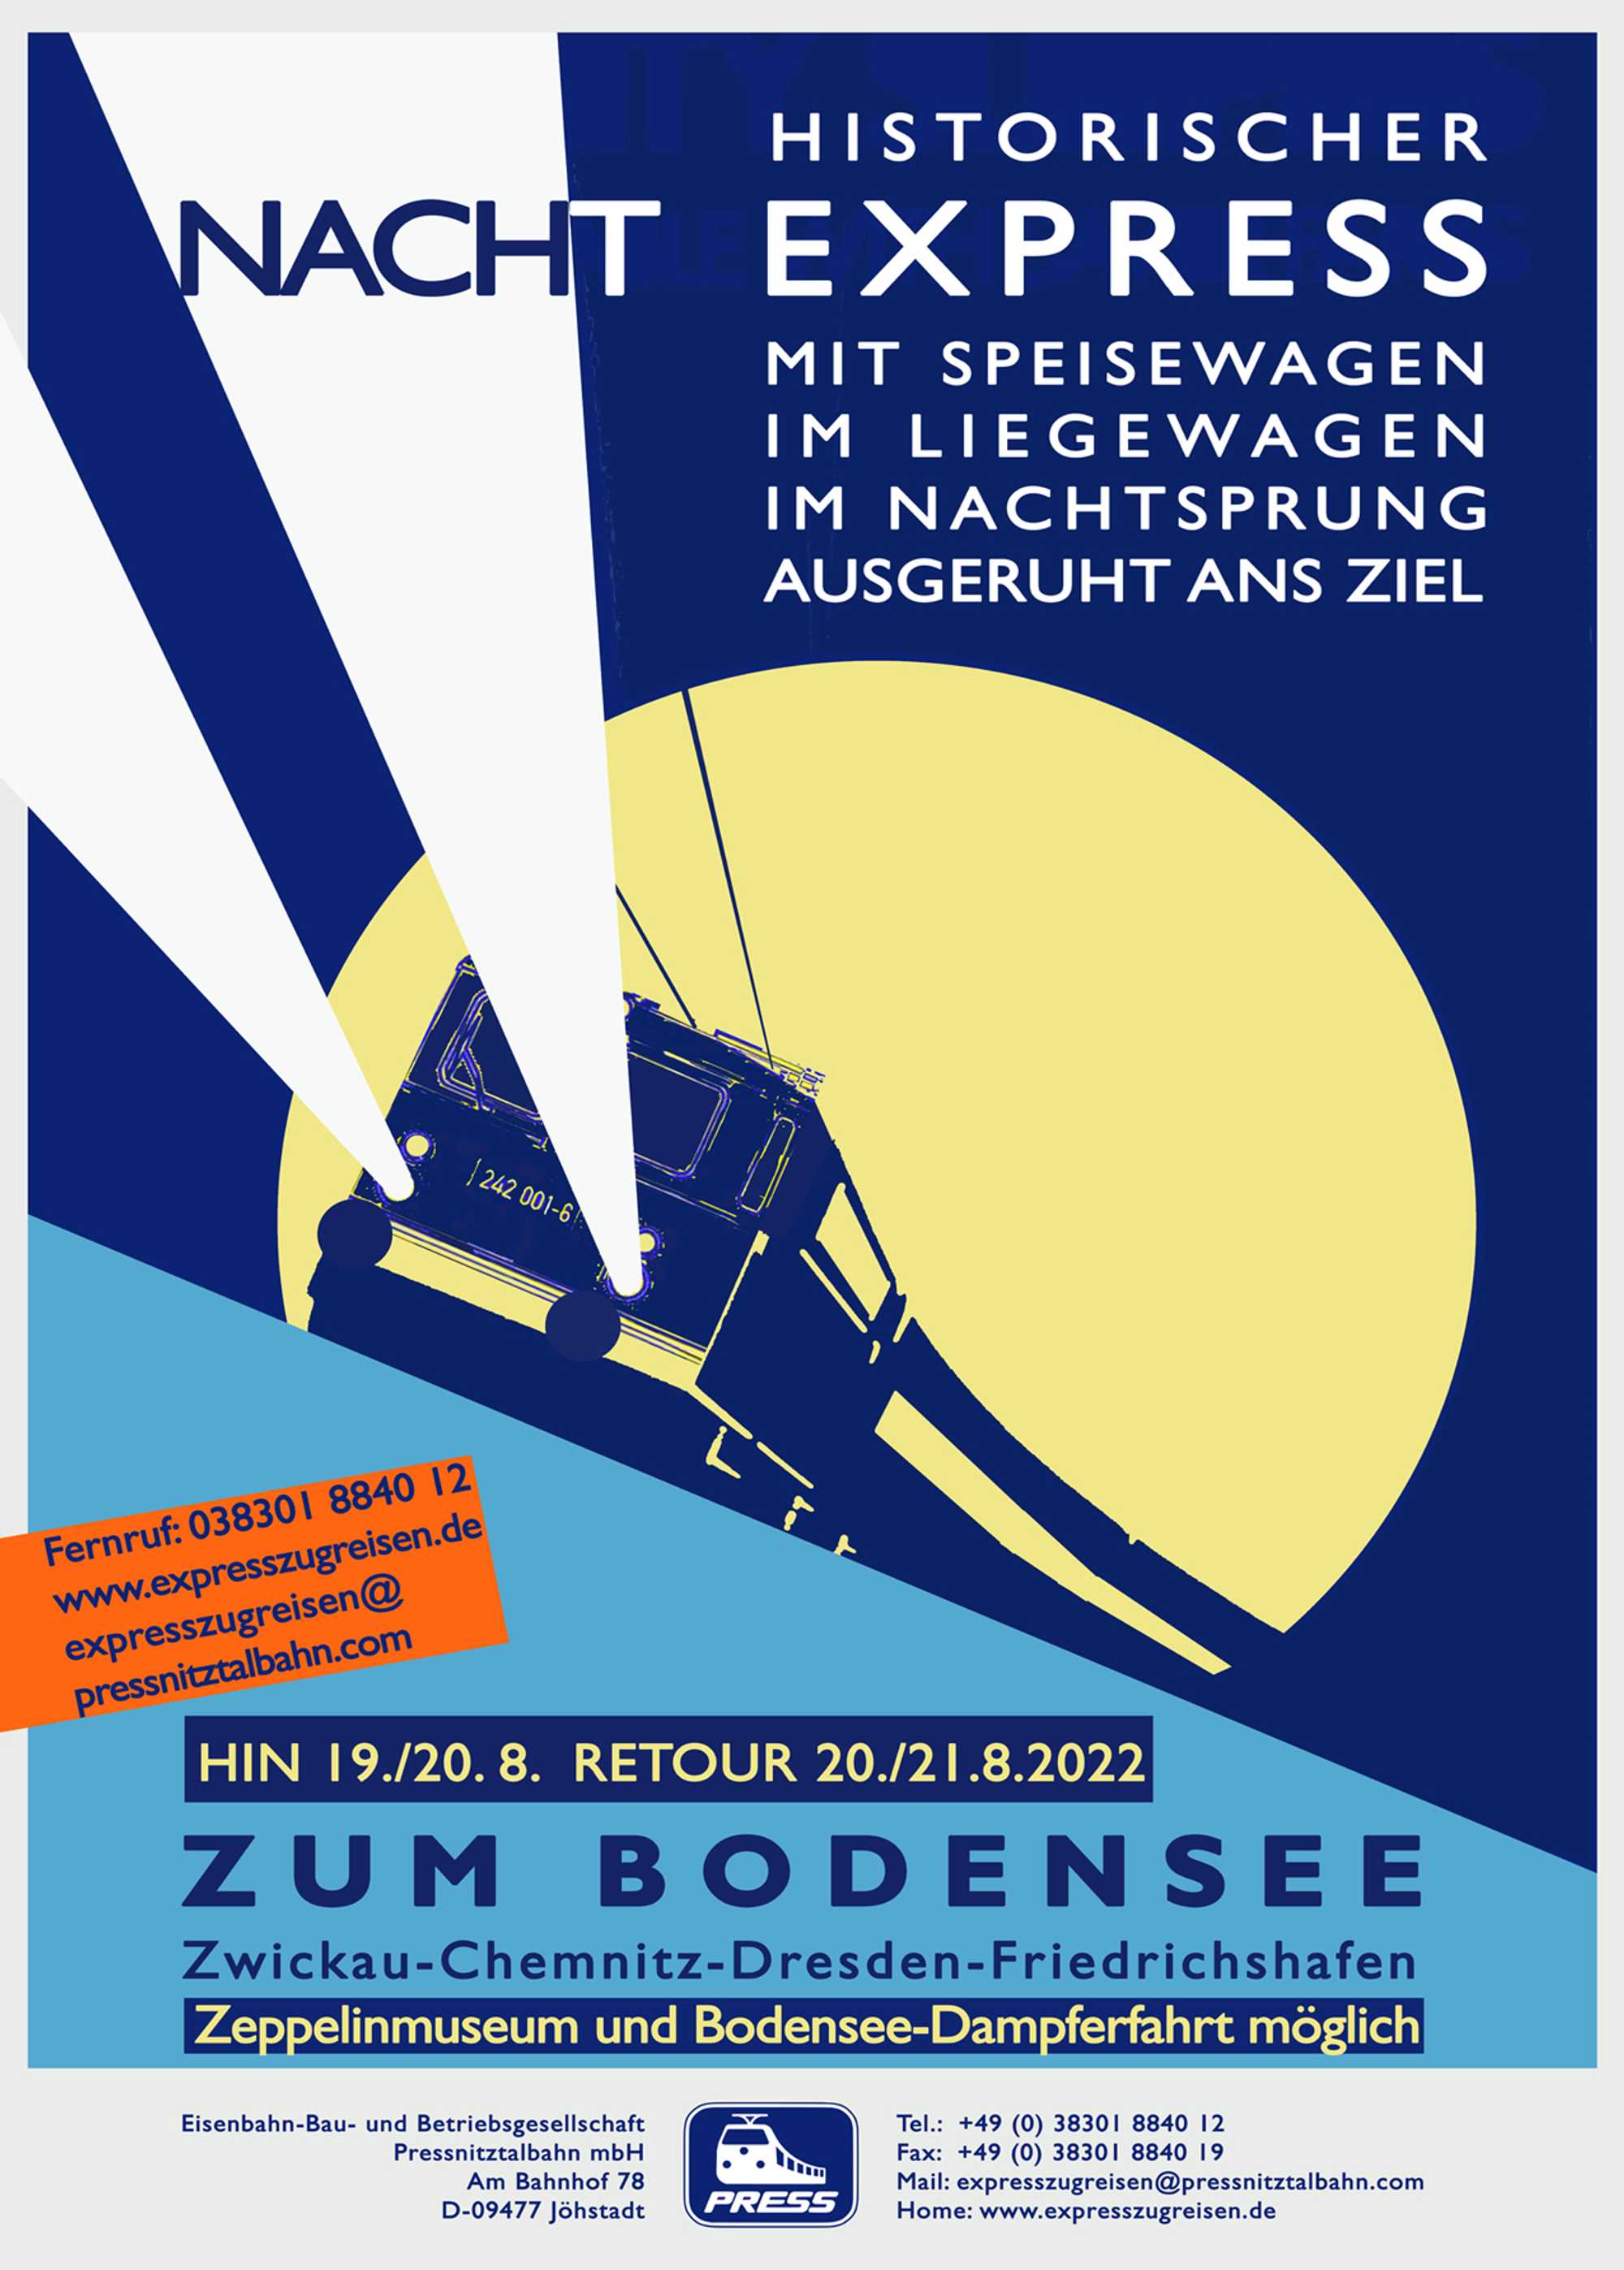 Veranstaltungsankündigung „19./20. August & Retour 20./21. August: Historischer Nachtexpress zum Bodensee“